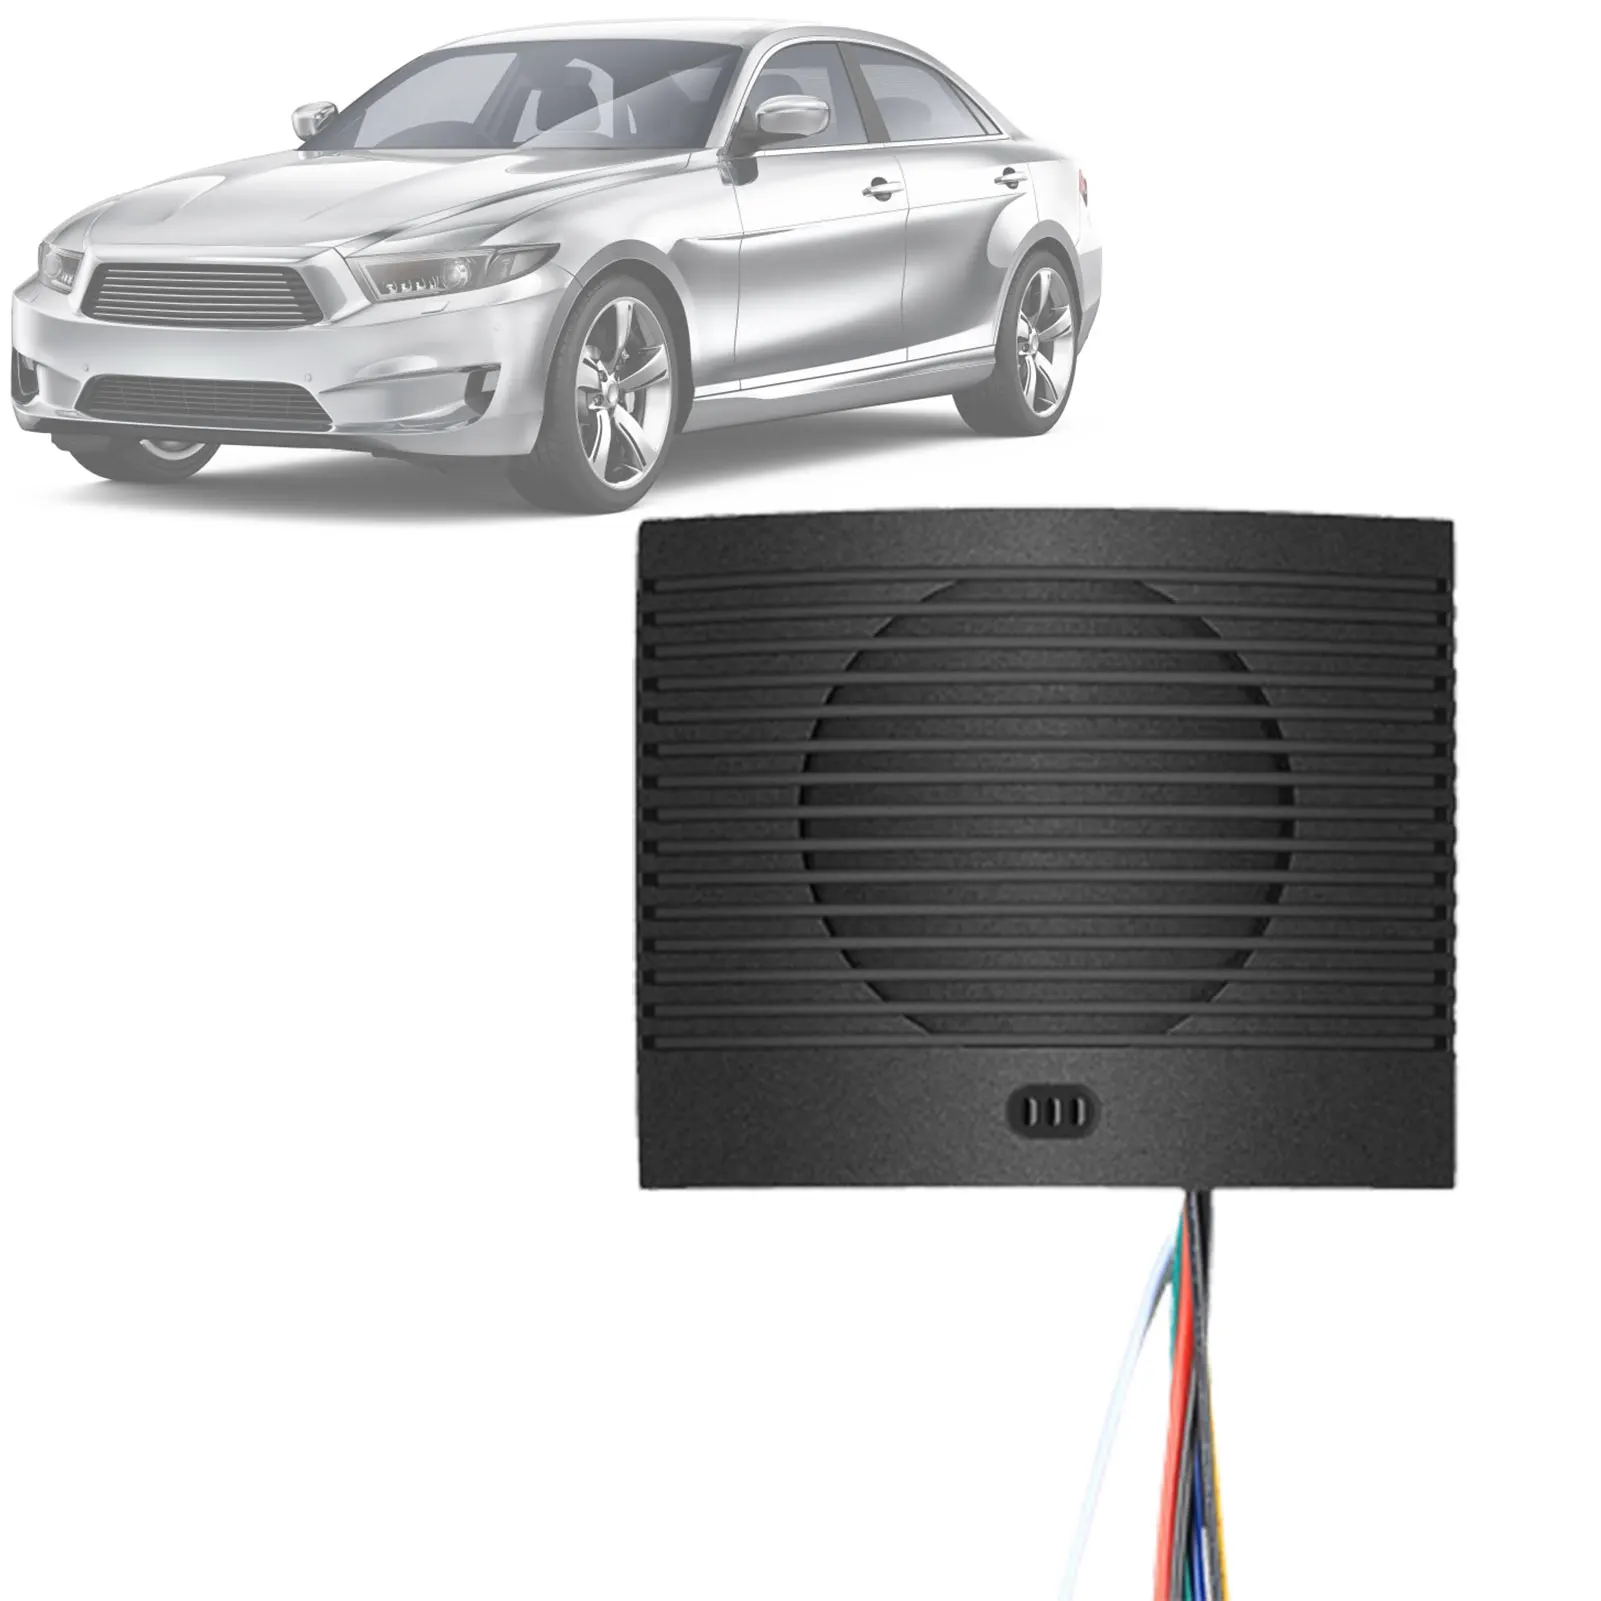 

Backup Alarm For Cars Backup Alarm For Cars 4-channel Trigger Speaker Prompter Car Horn Reminder Car Voice Warning Alarm Buzzer